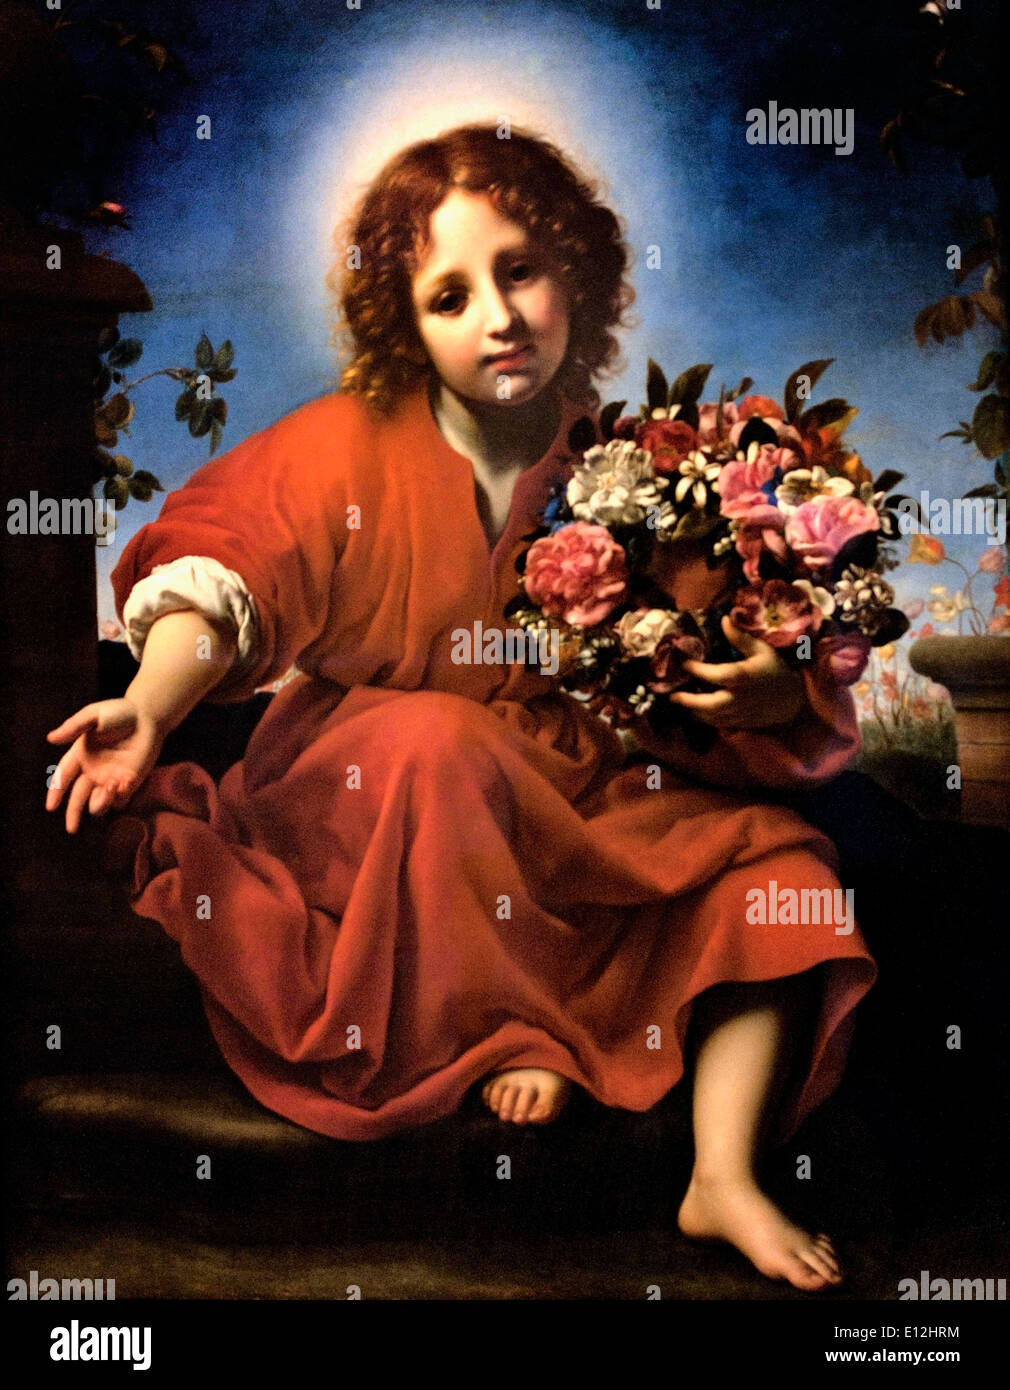 L'enfant Christ avec une couronne de fleurs 1663 Carlo Dolci Florence Italie italien 1616-1687 Banque D'Images